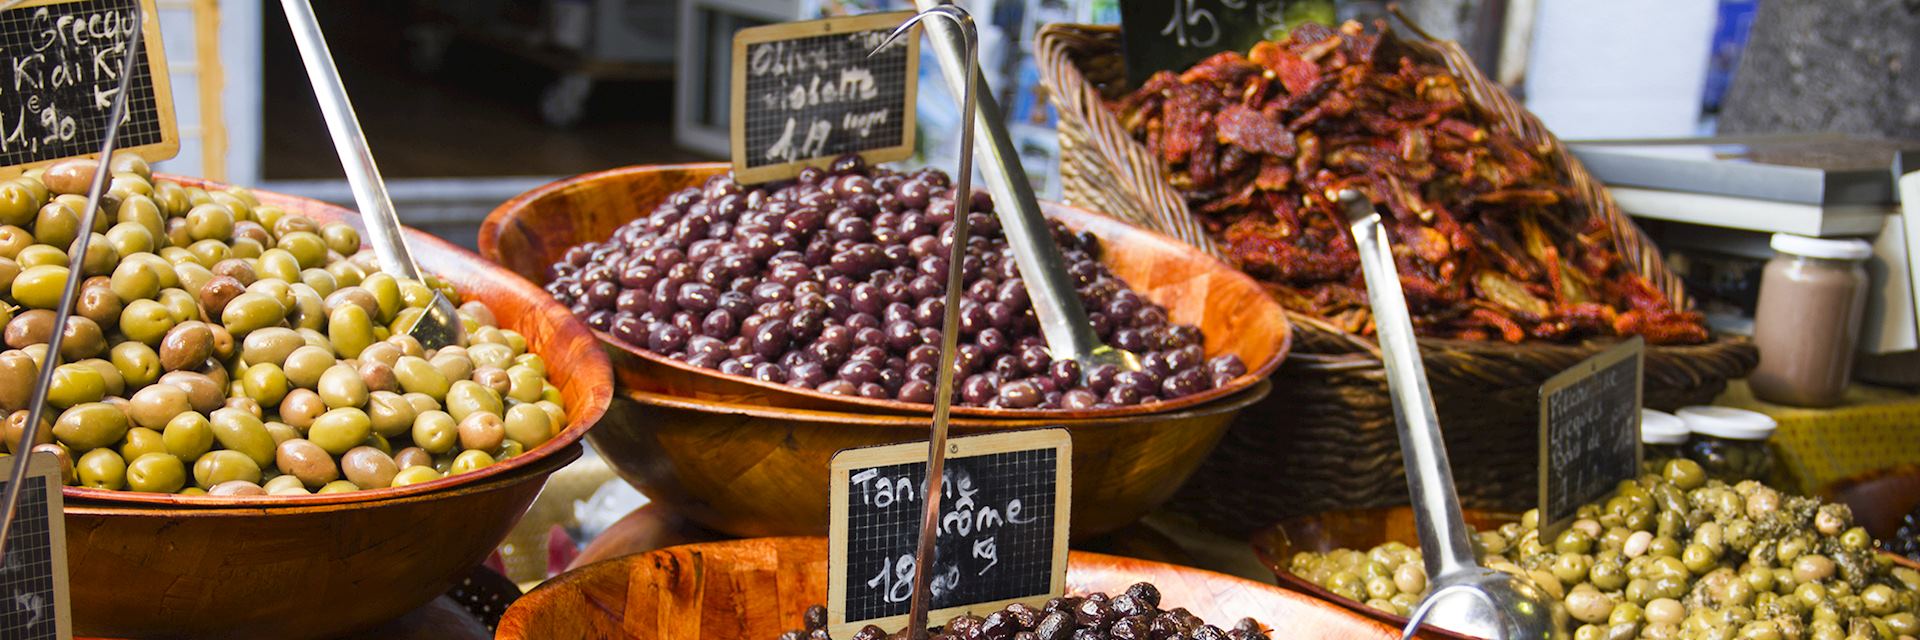 Olives for sale in a market, France